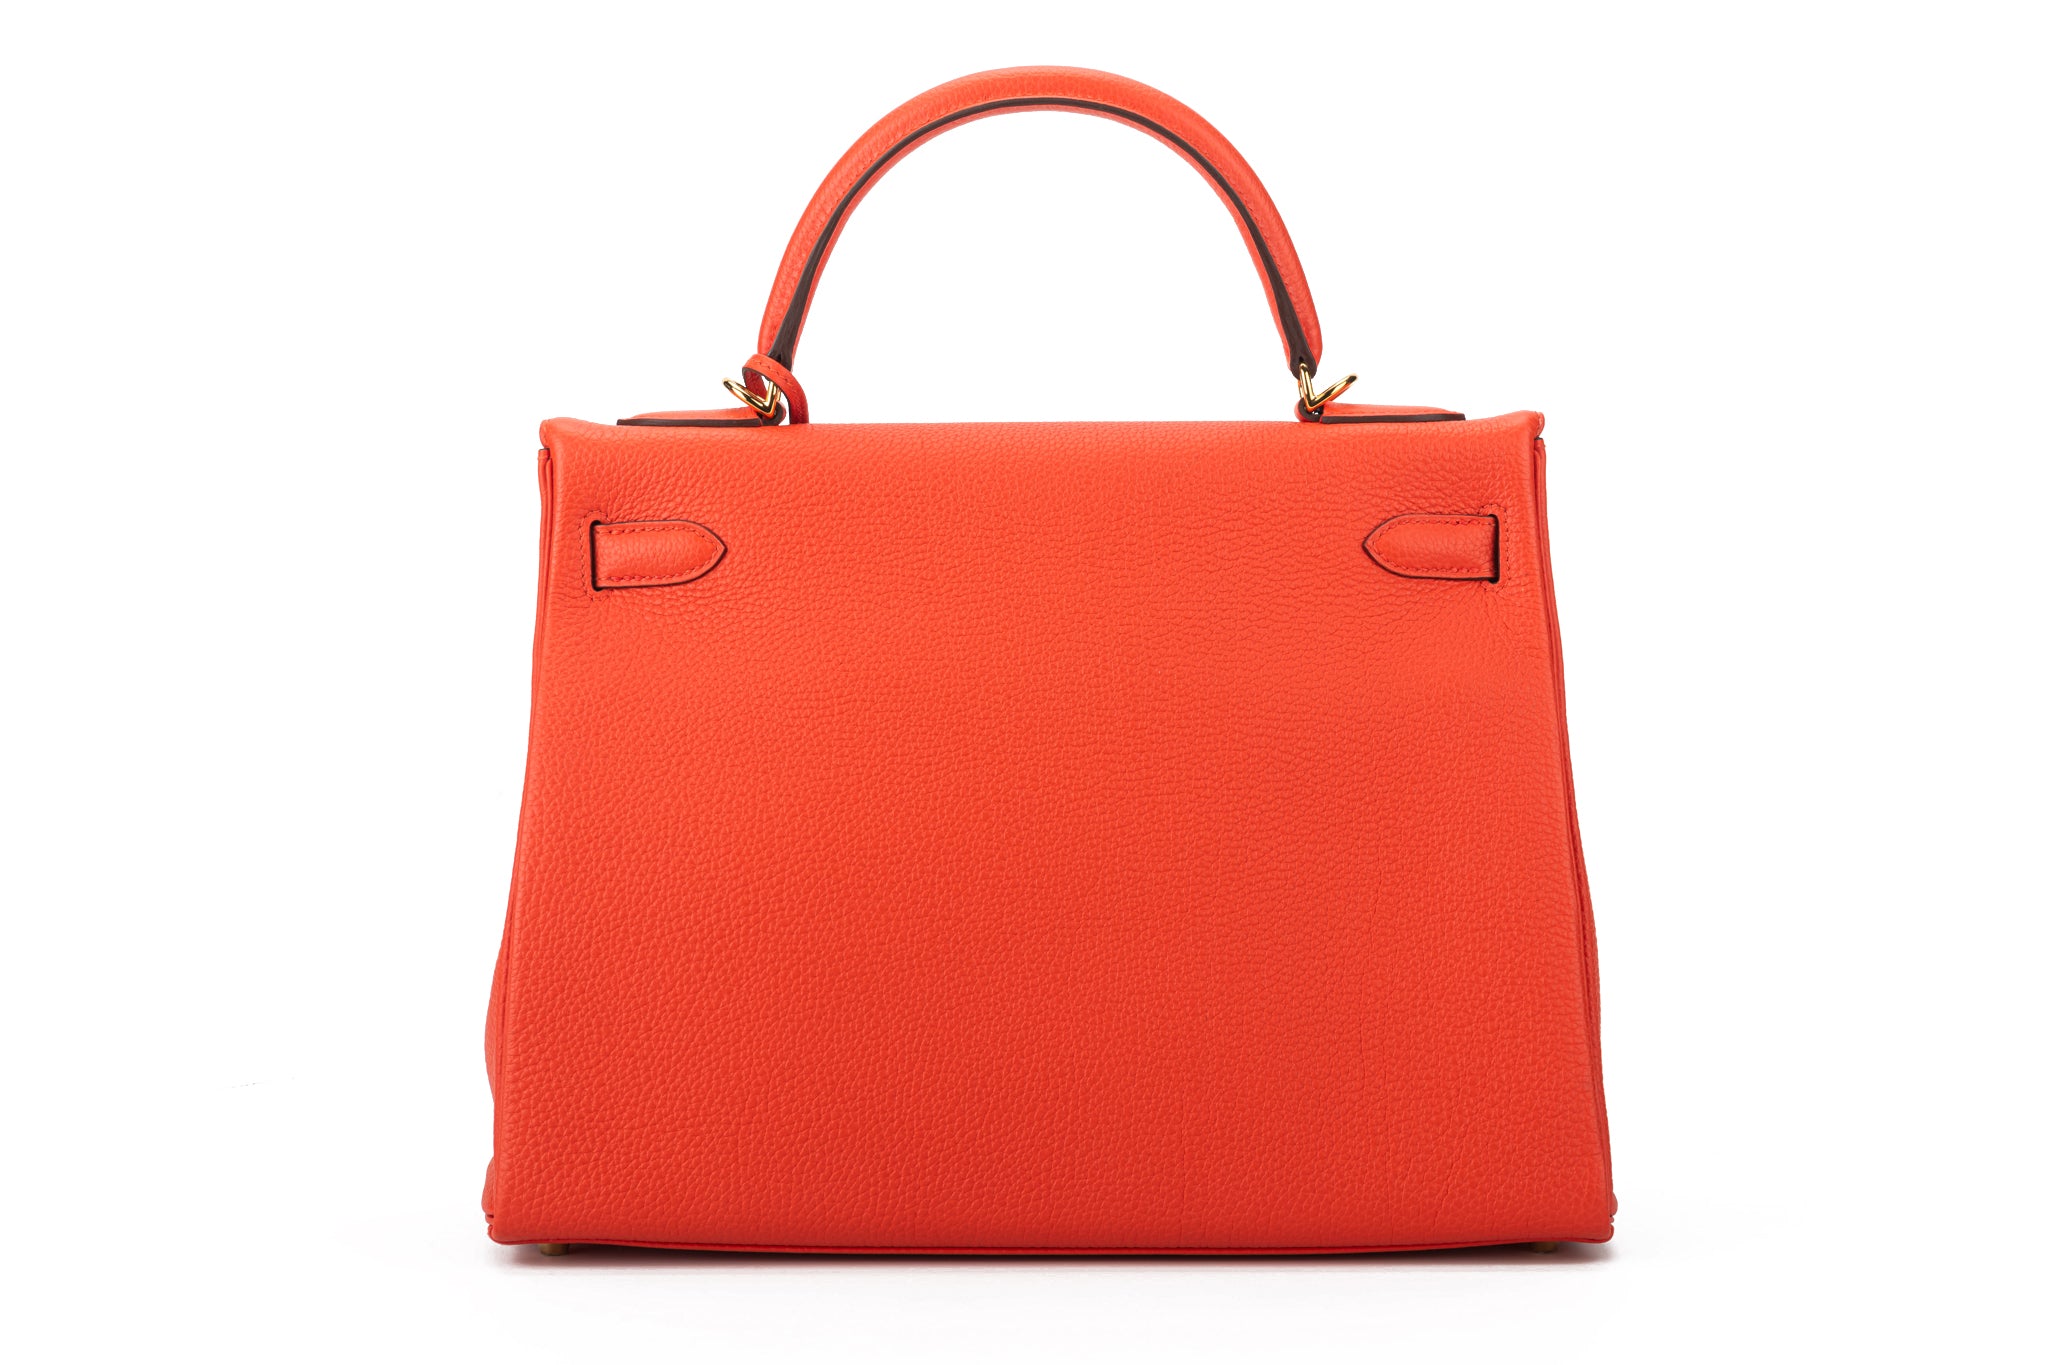 Hermès 32cm Kelly Capucine Bag GHW